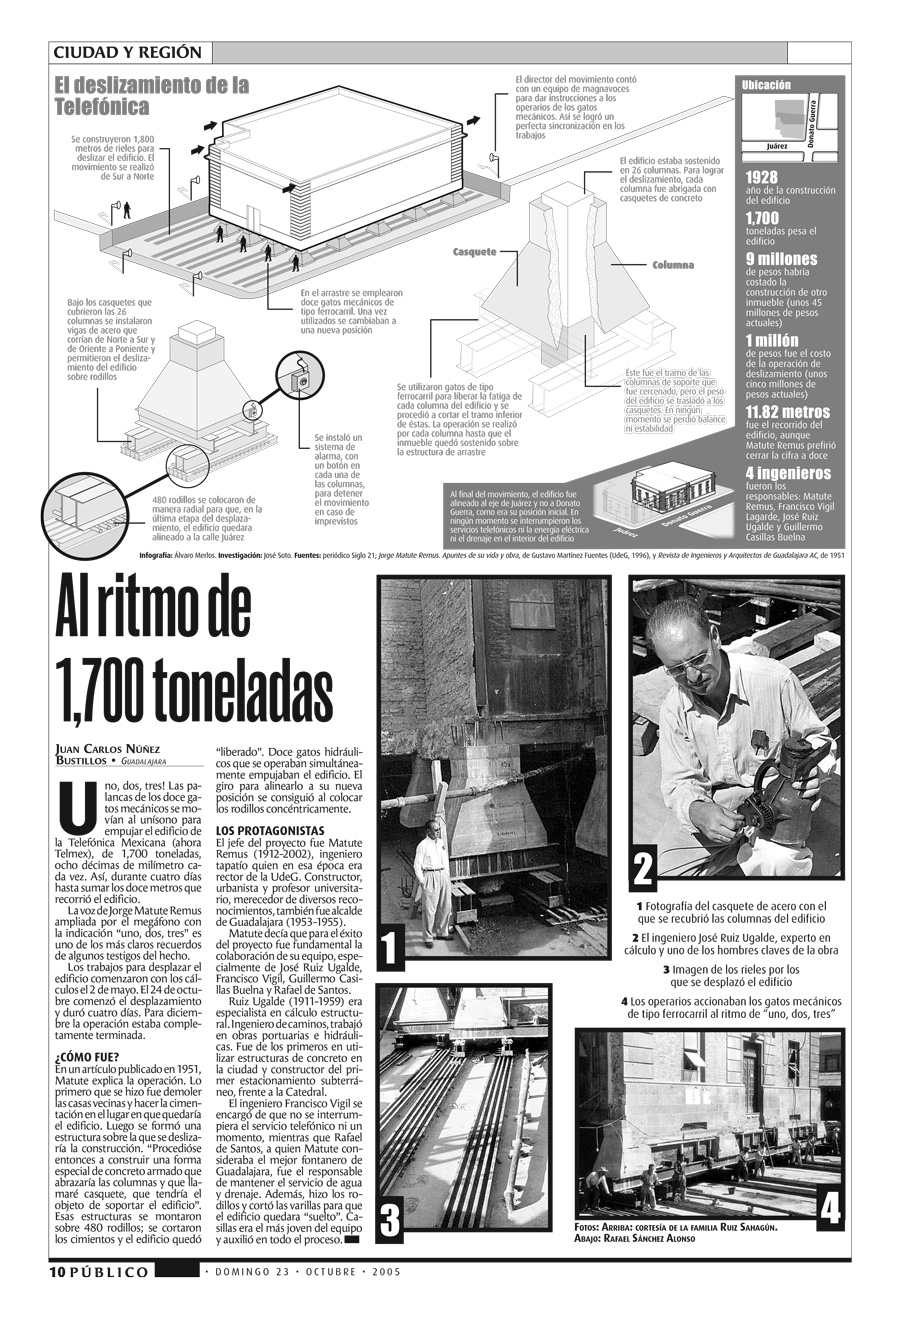 Reportaje de Juan Carlos Núñez Bustillos publicado en Público-Milenio el 23 de octubre de 2005. Fotografías originales de Rafael Sánchez Alonso. Infografía de Álvaro Merlos y José Soto Galindo.